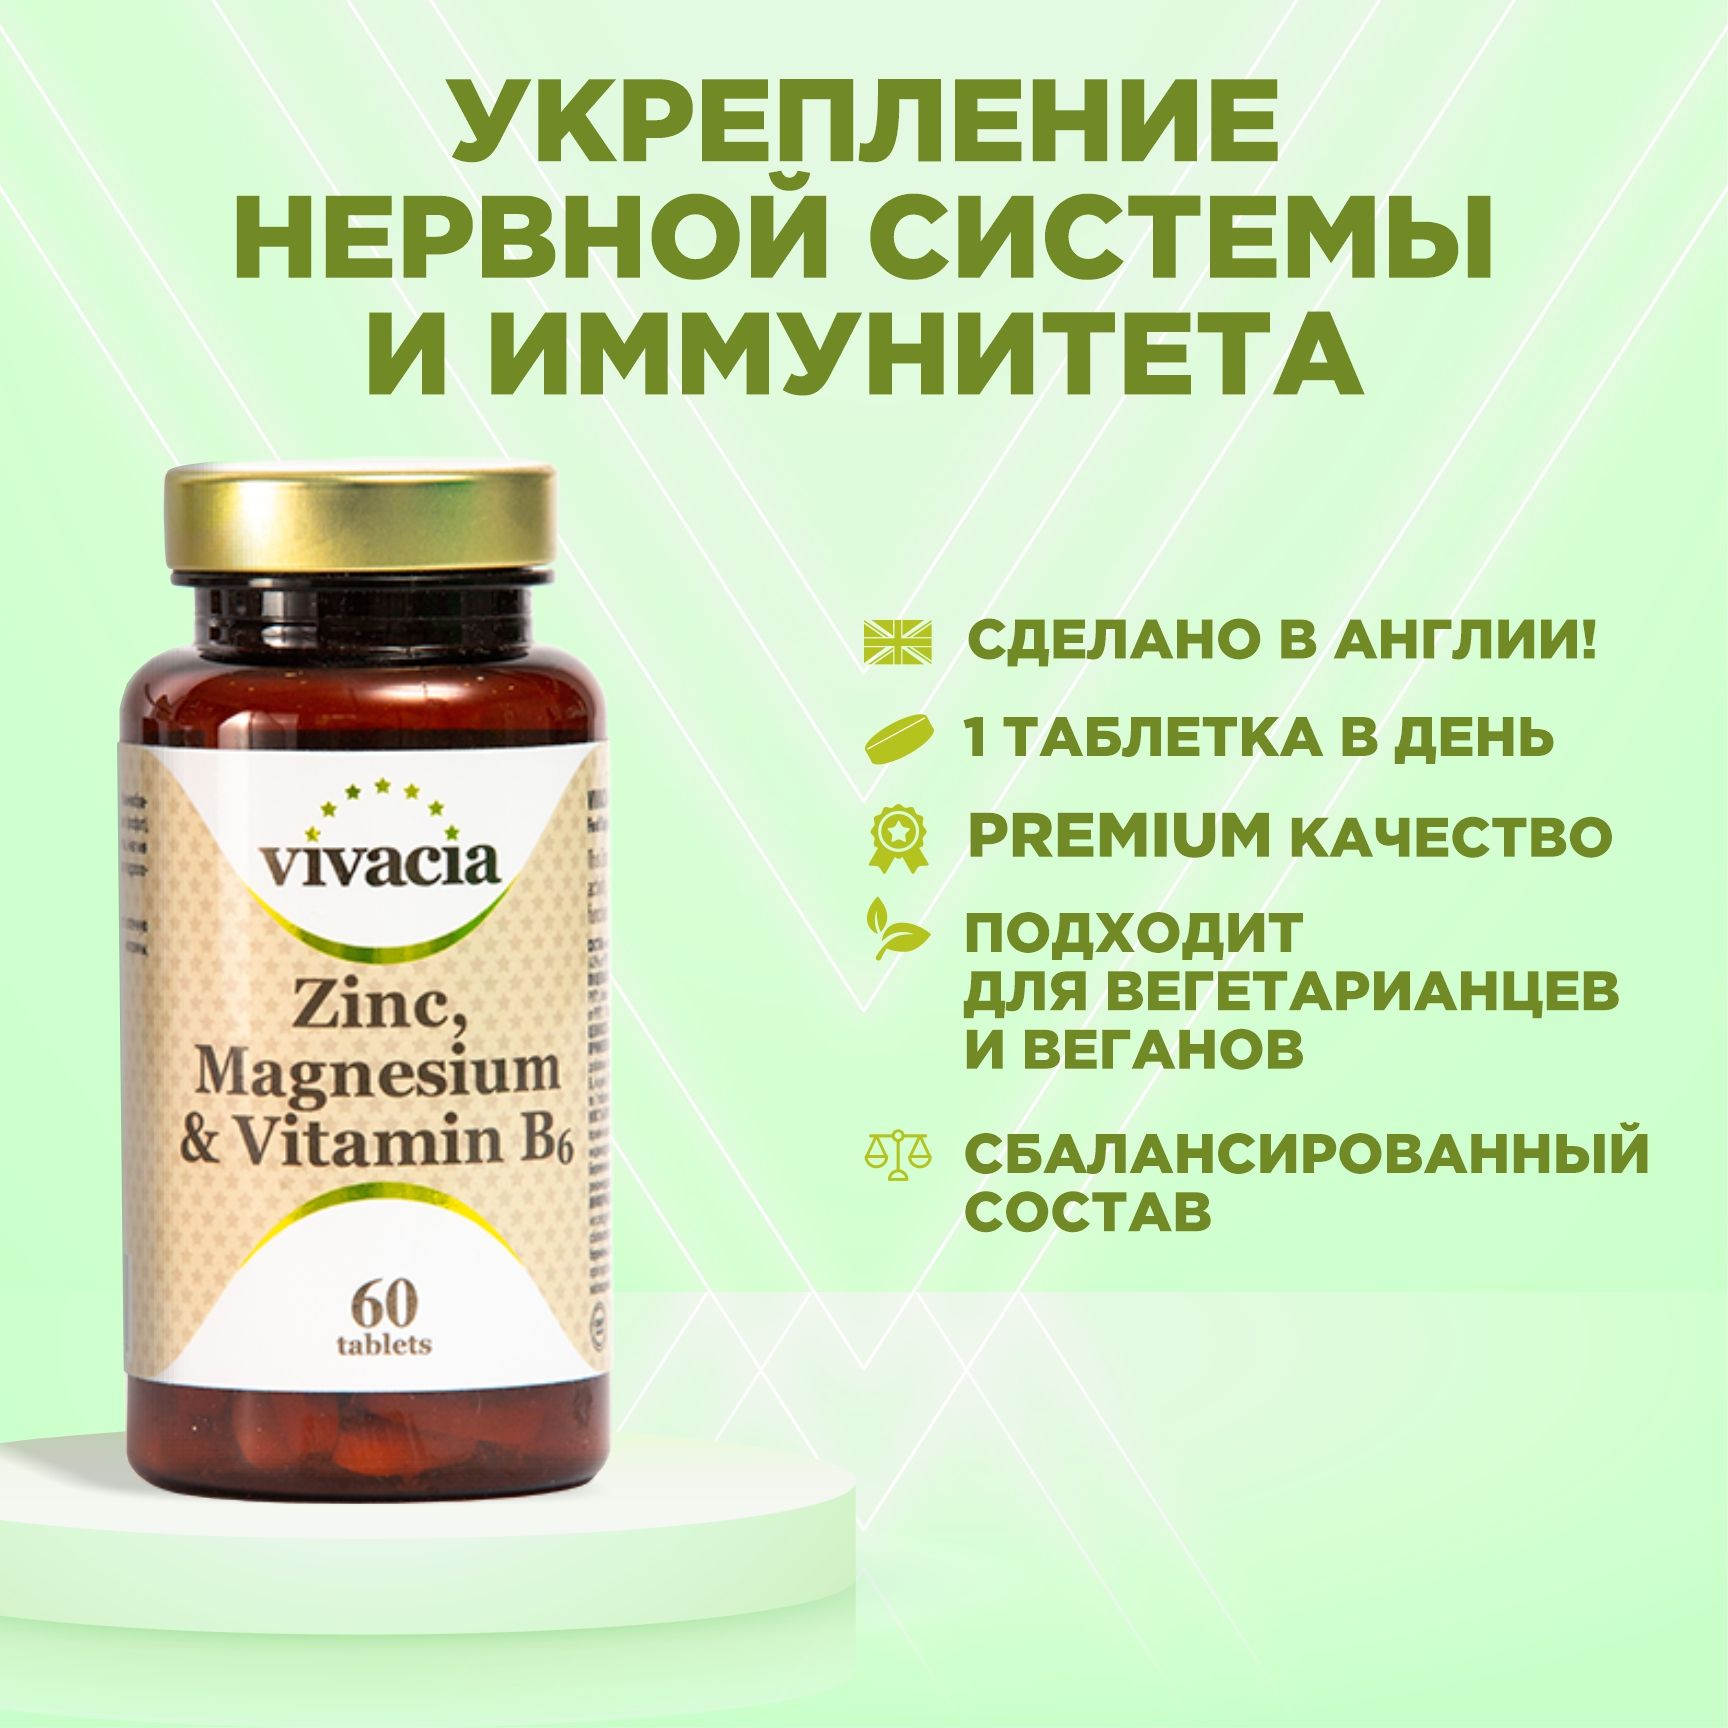 Витамин отзывы покупателей и врачей. Цинк магний и витамин в6 таб 60 шт vivacia Вивация. Вивация витамин магний цинк магний в6. Вивация цинк Магнезиум в6. Витамины для нервной системы взрослого.